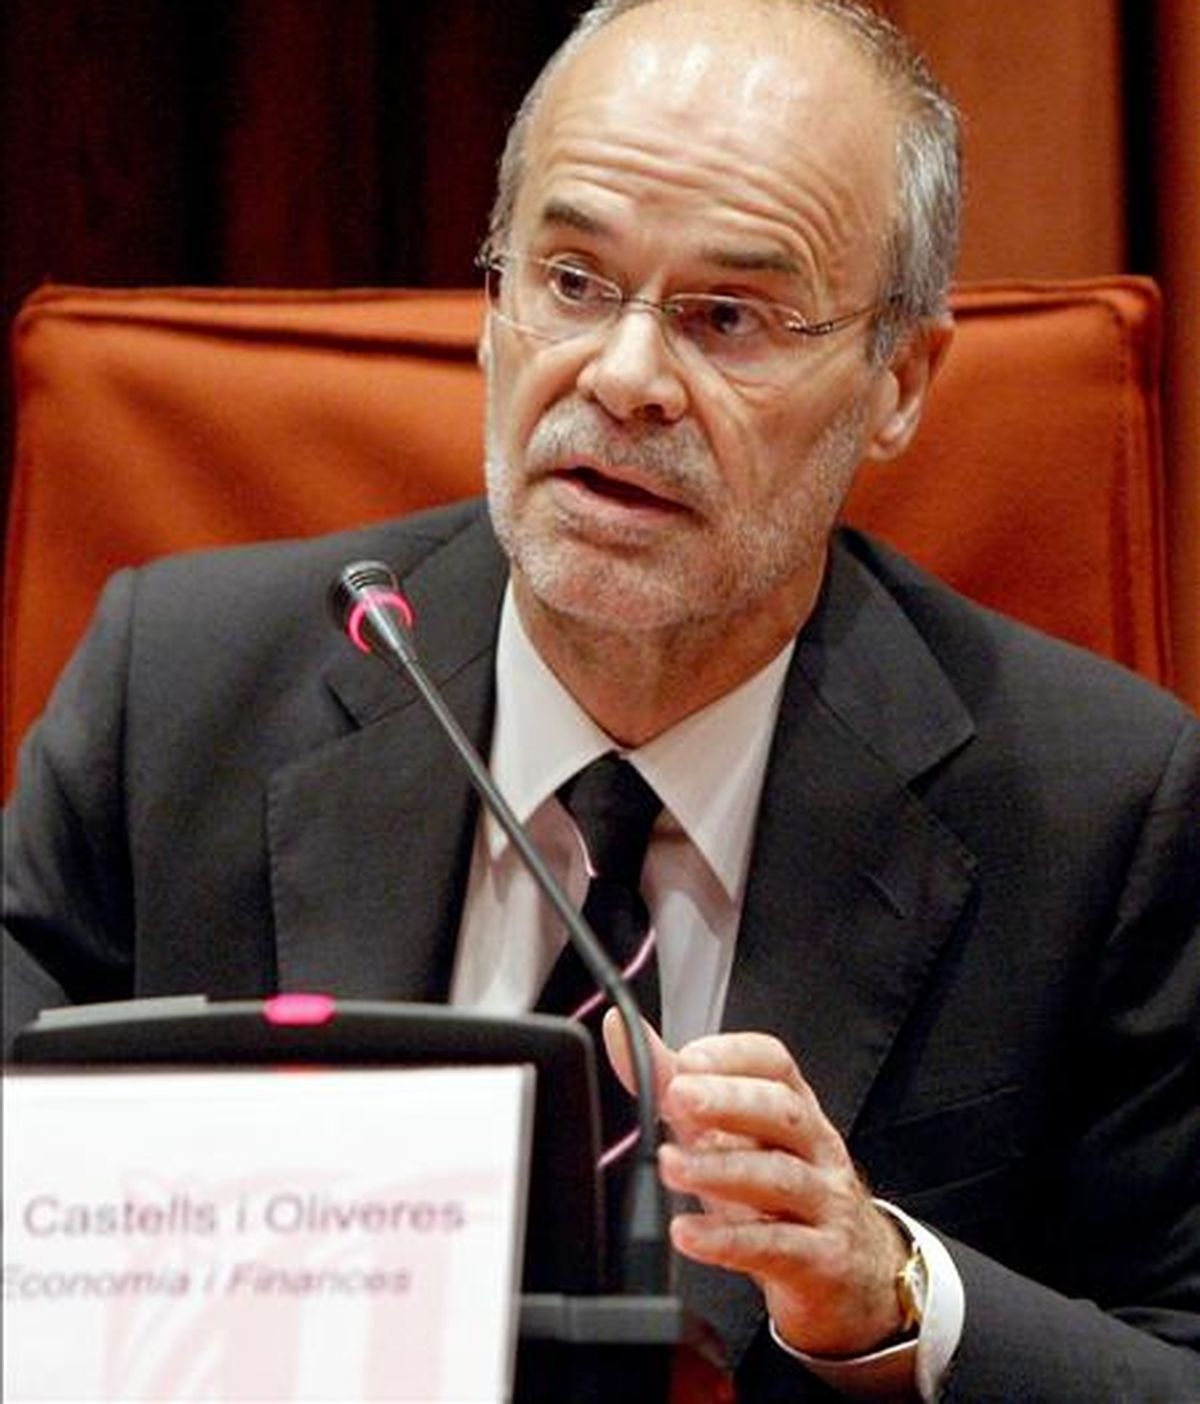 El conseller de Economía y Finanzas, Antoni Castells, durante su declaración ante la comisión de investigación del Parlament de Cataluña sobre el caso Palau de la Musica. EFE